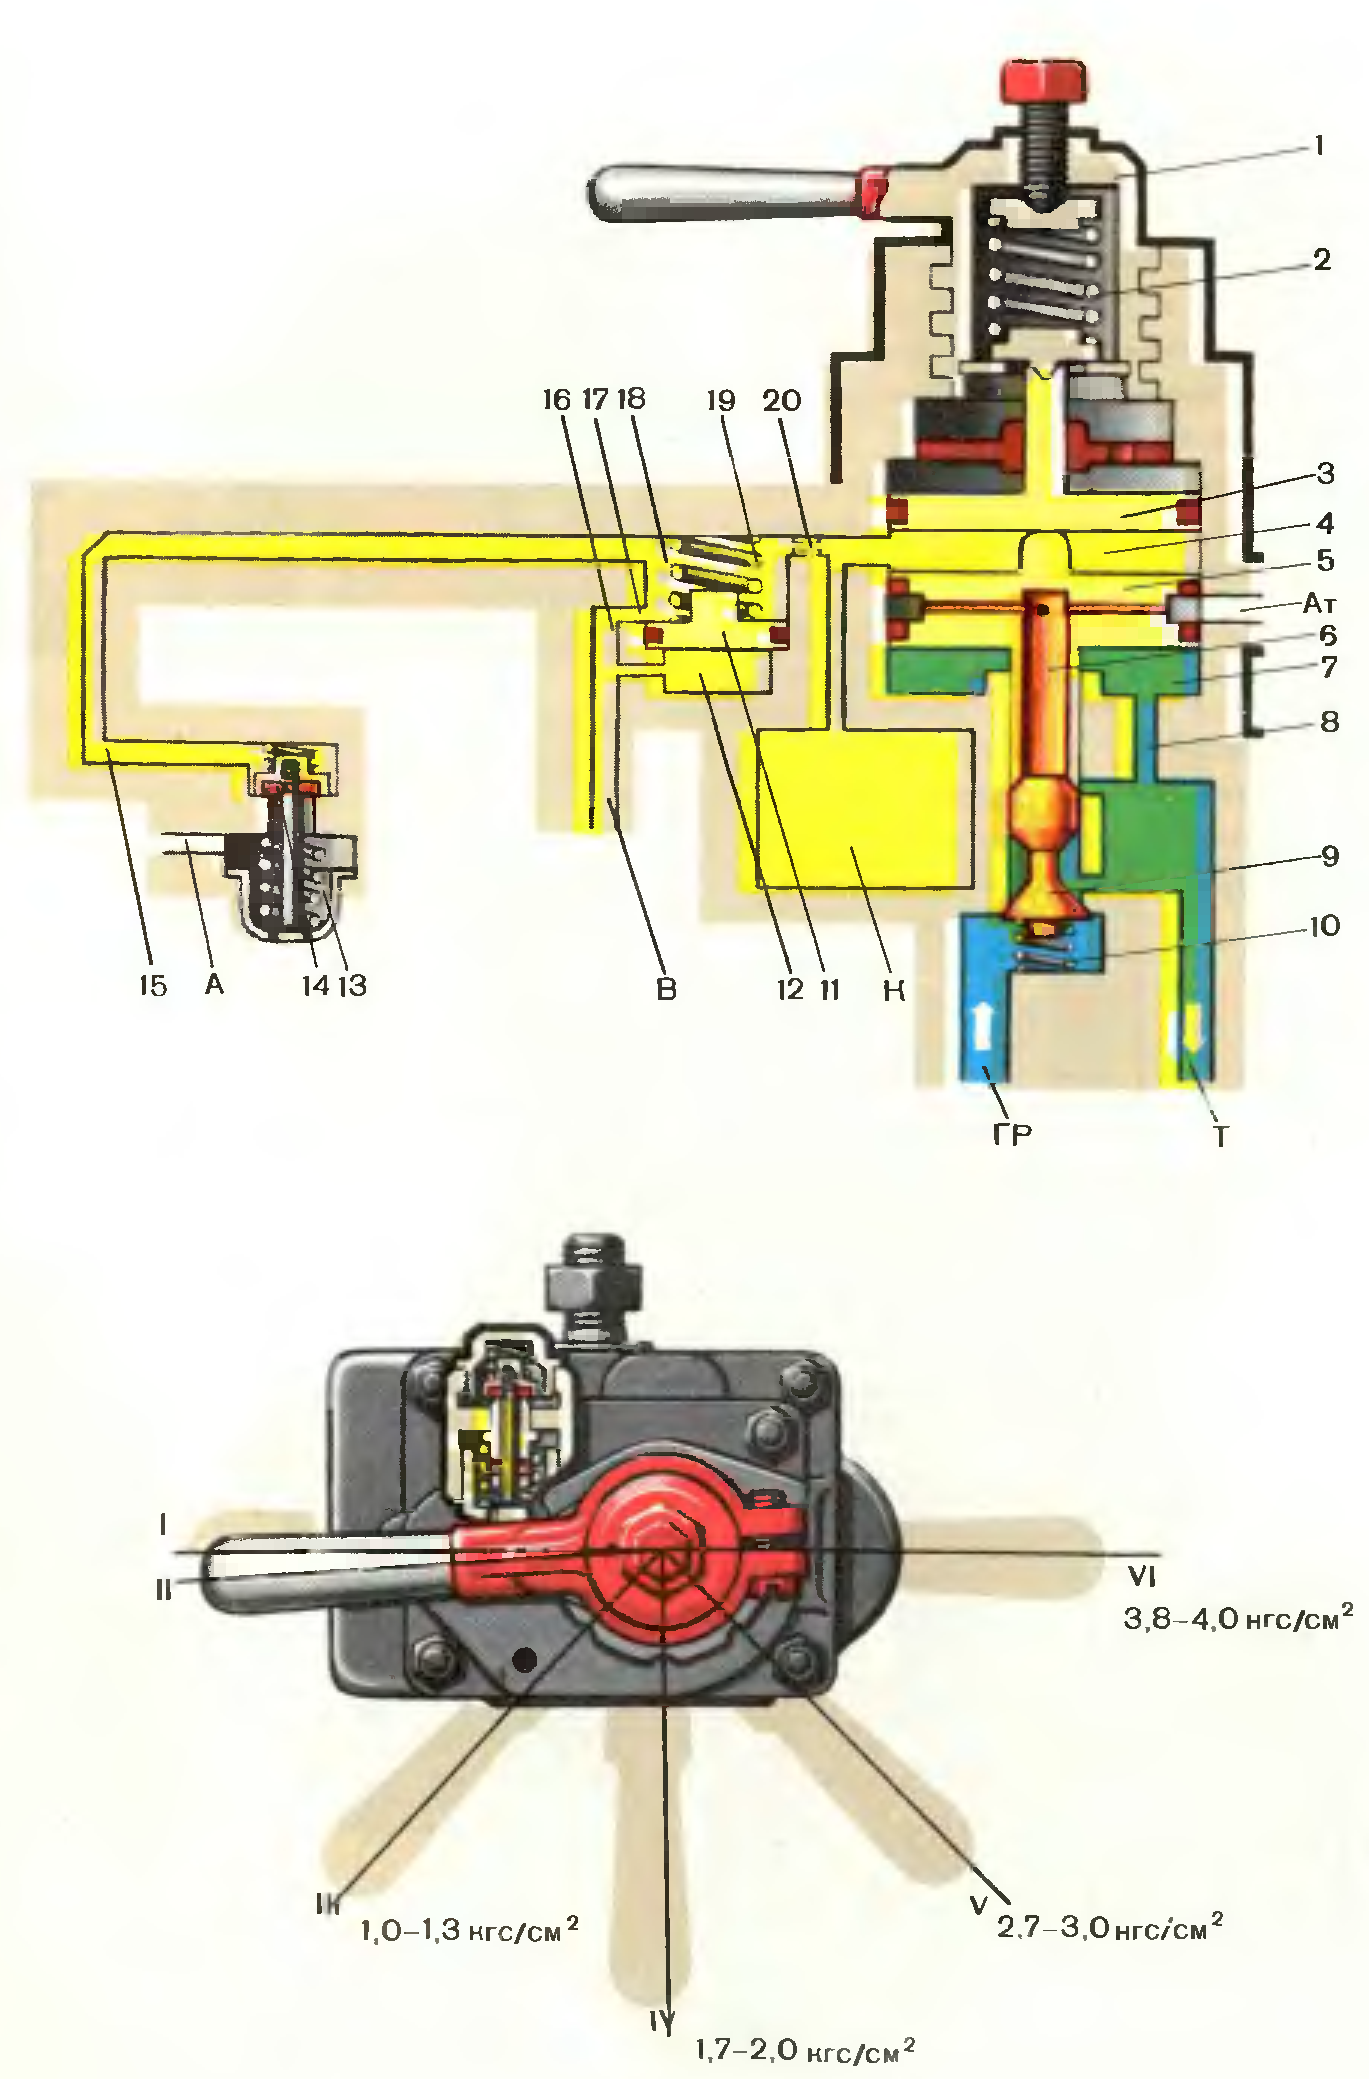 Схема крана машиниста